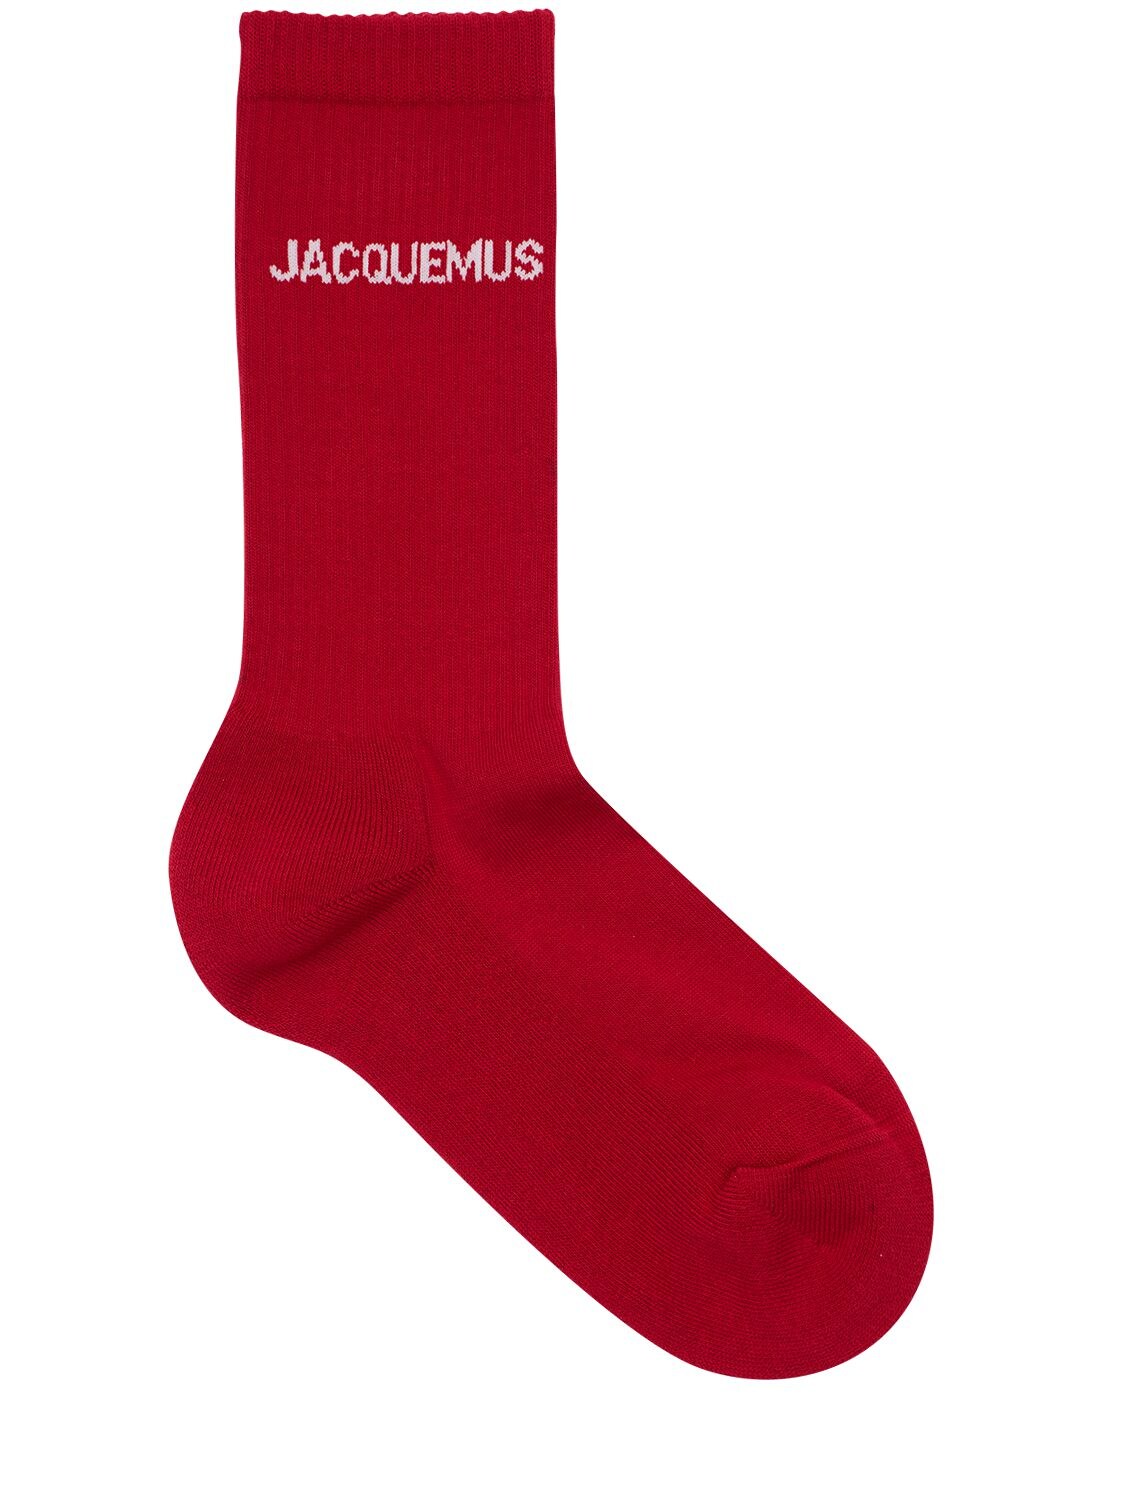 JACQUEMUS LES CHAUSSETTES印花棉袜,74I5CK087-UKVE0